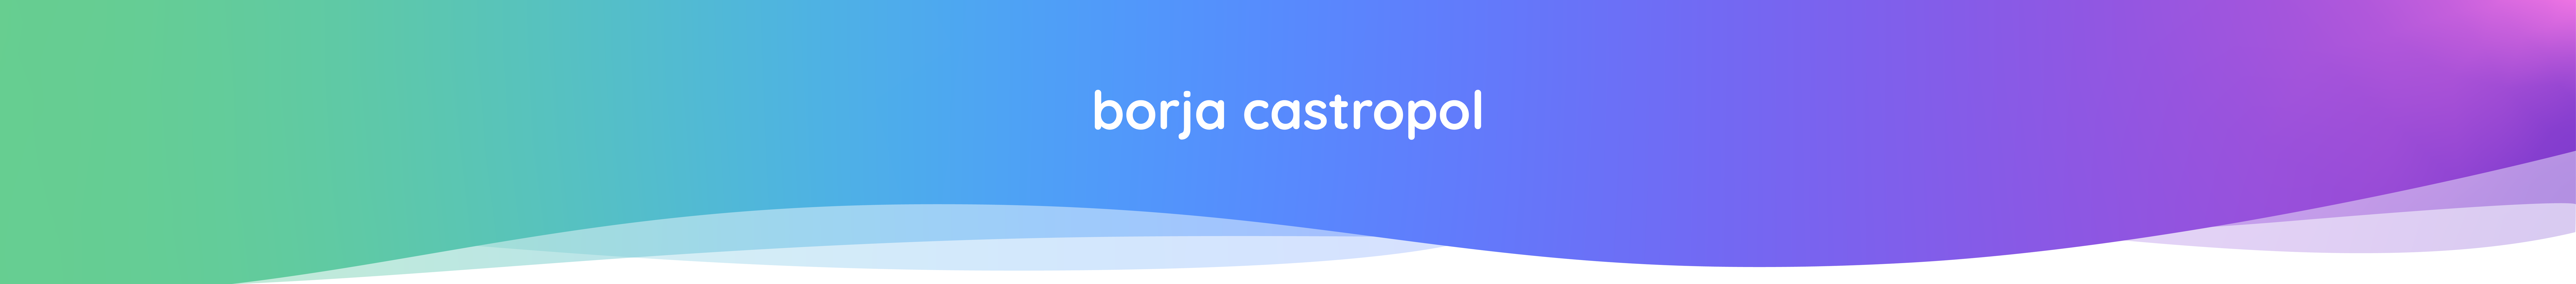 Borja Castropol's profile banner